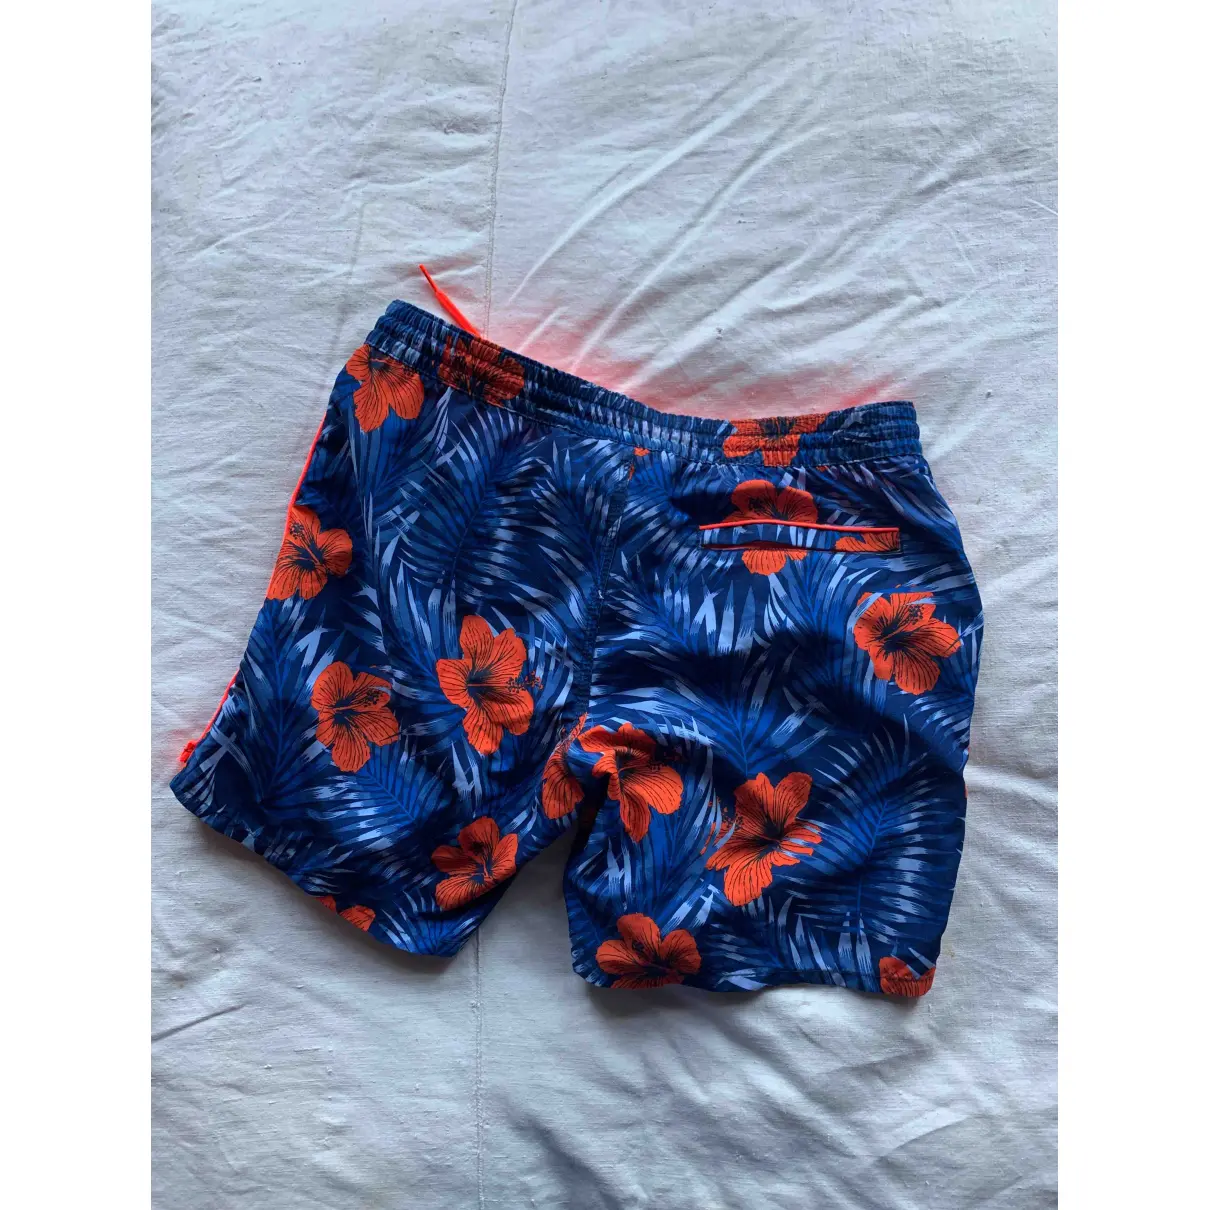 Buy Sundek Blue Polyester Shorts online